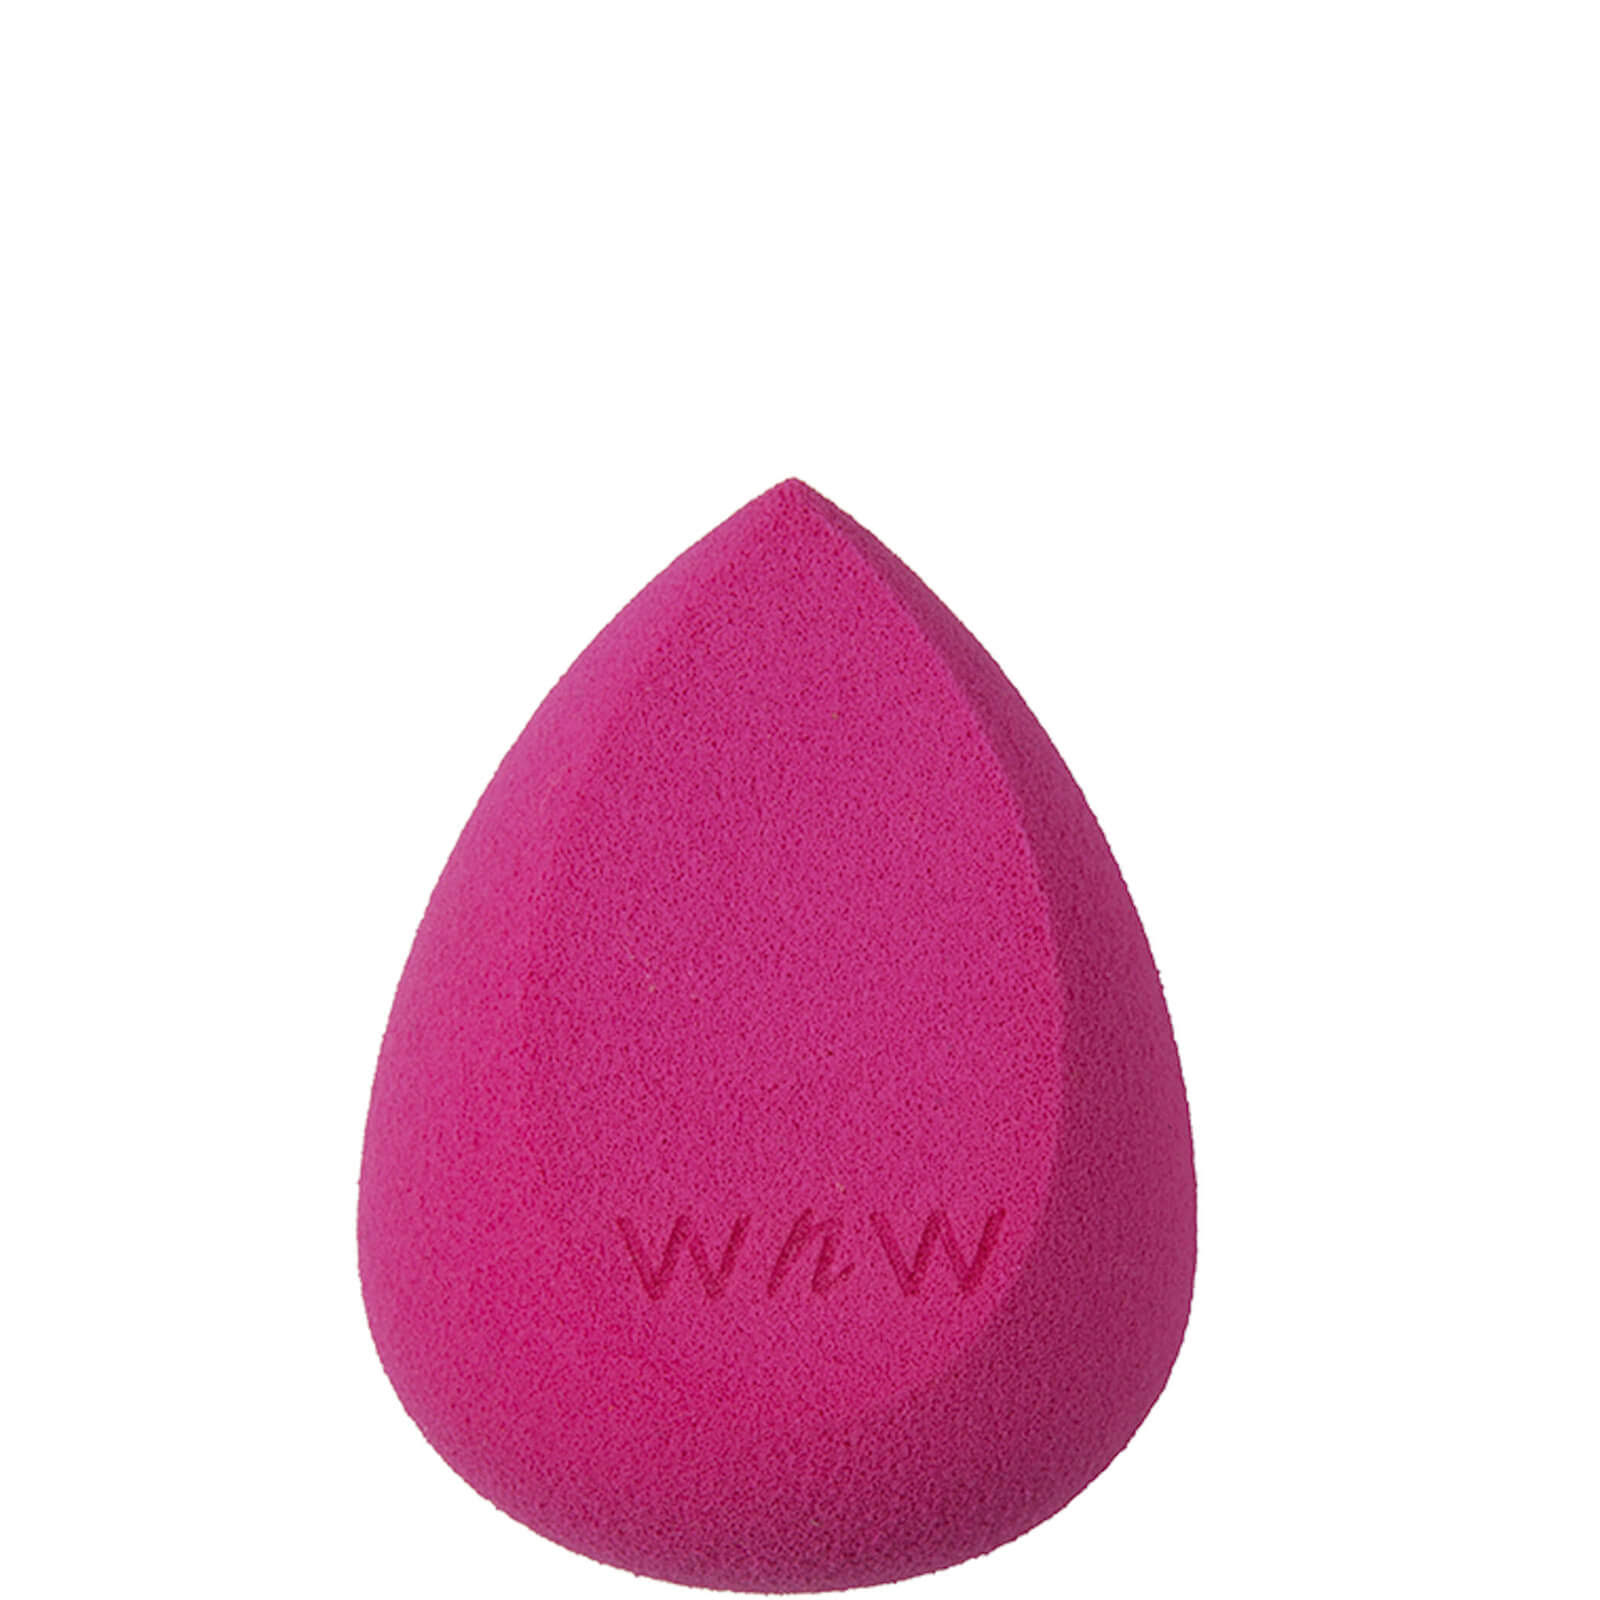 Wet N Wild Makeup Sponge Applicator - Pink